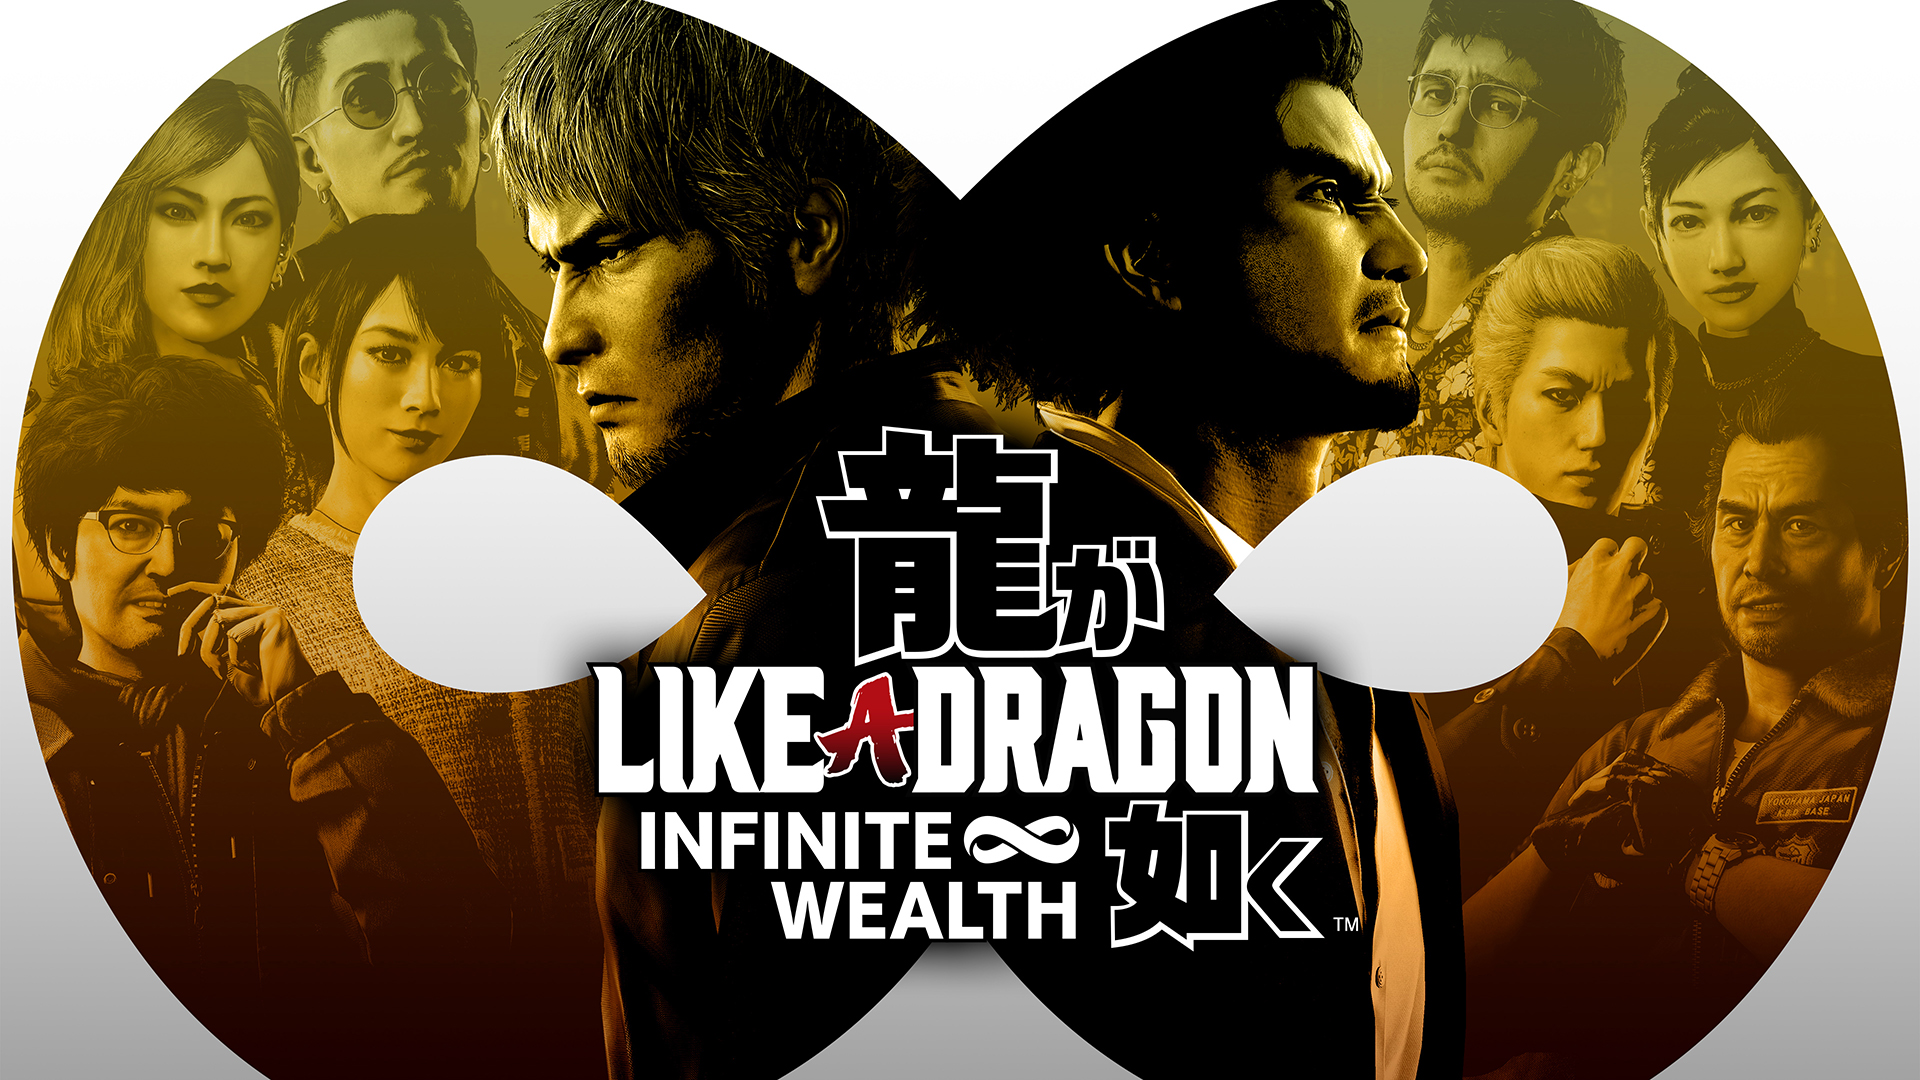 Like a Dragon: Infinite Wealth Release Date Set, Danny Trejo Joins Cast